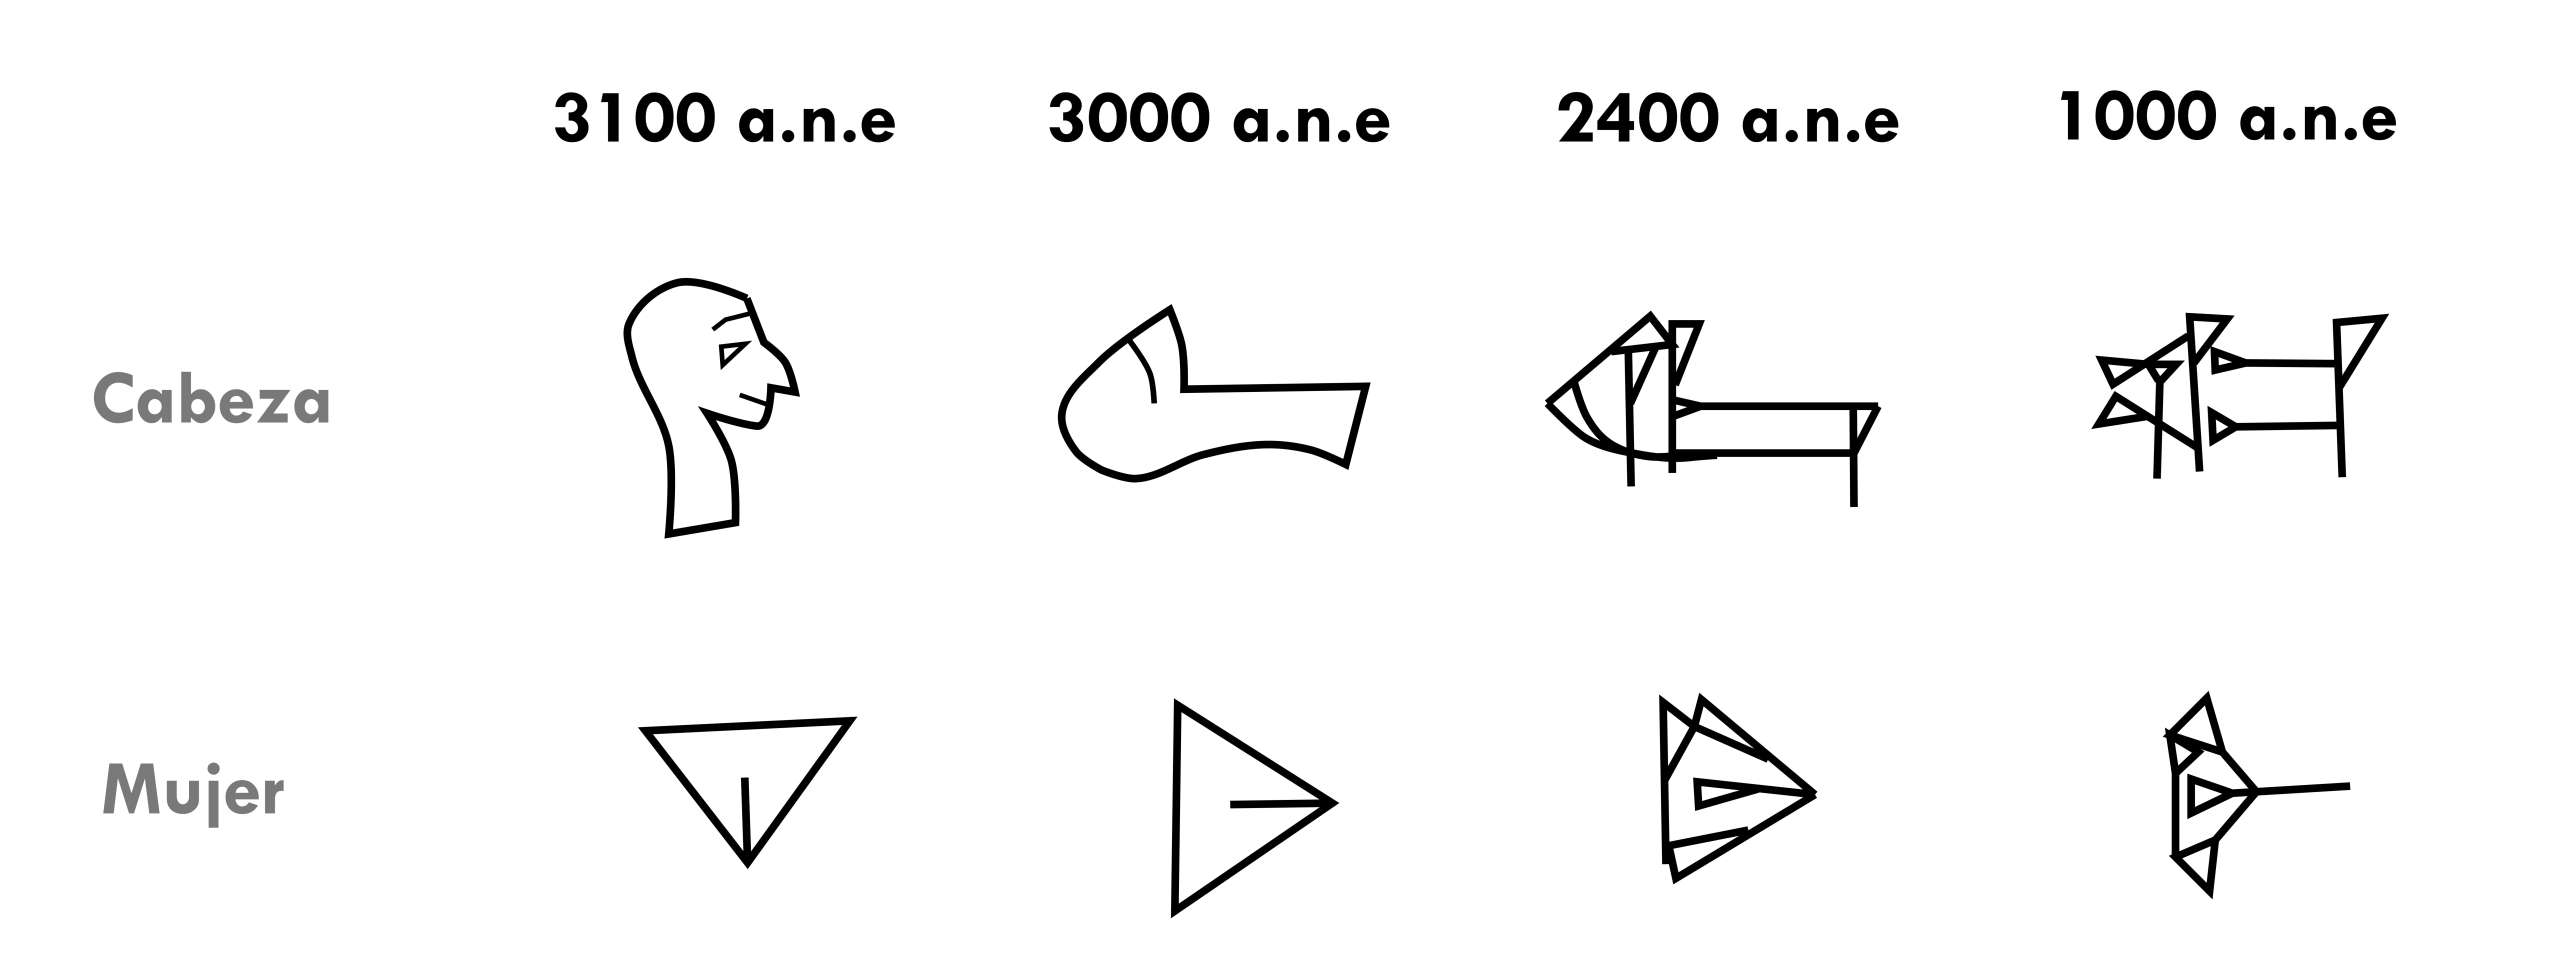 Evolución de las palabras “cabeza” y “mujer” desde los primeros pictogramas hasta su escritura cuneiforme tardía.